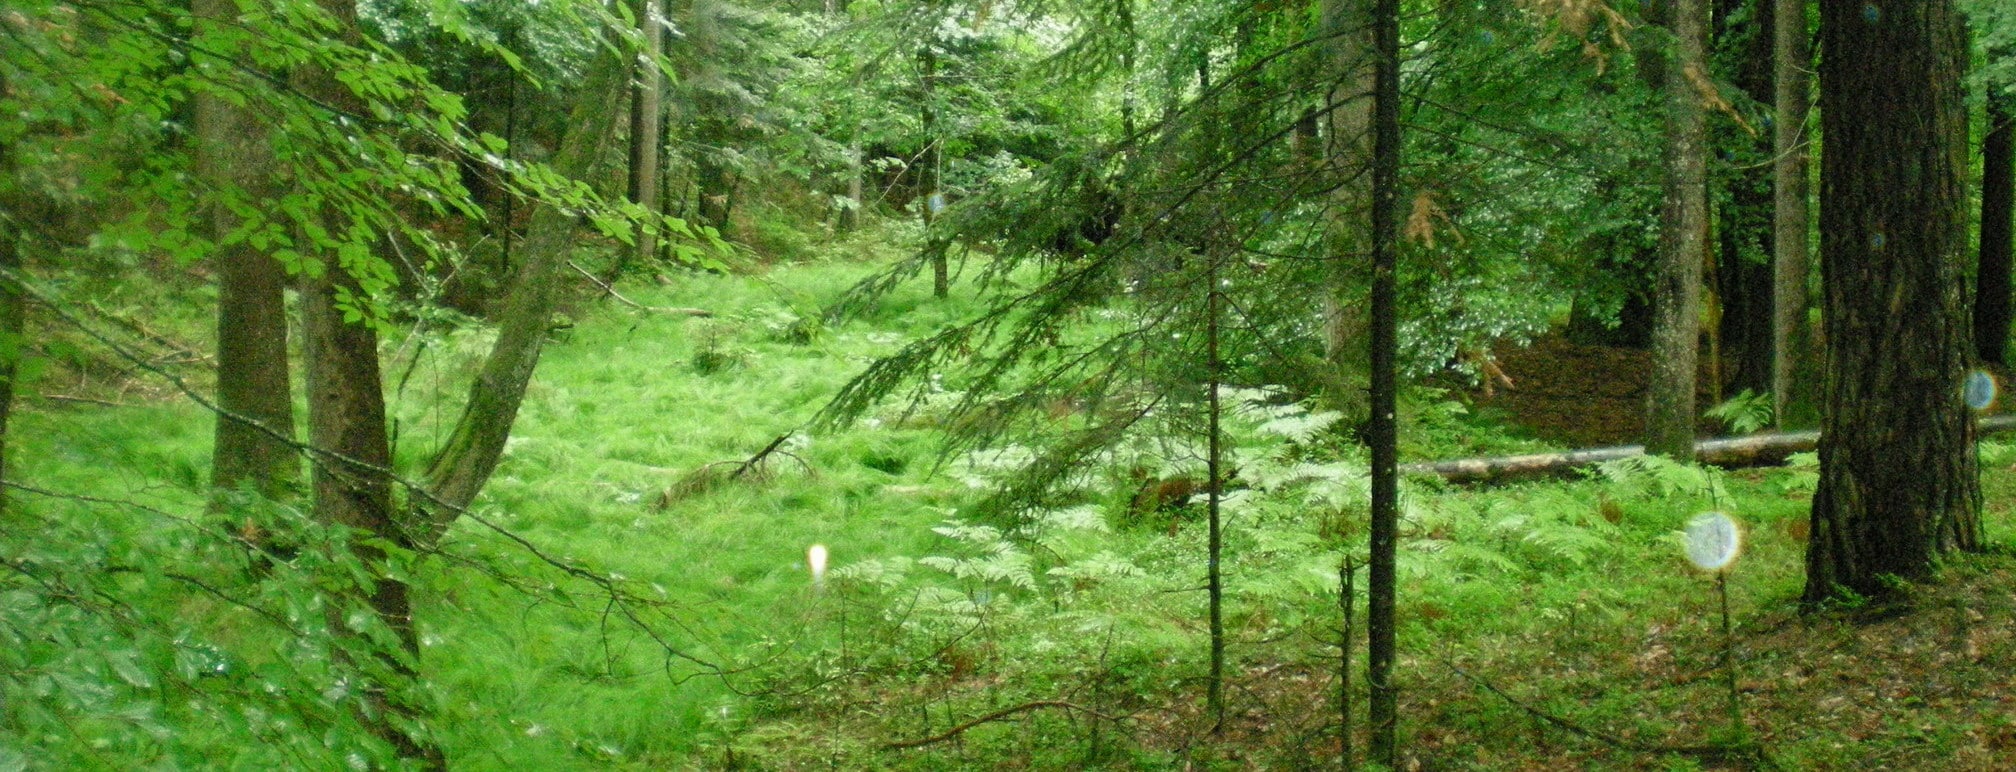 Drautal - Naturwald